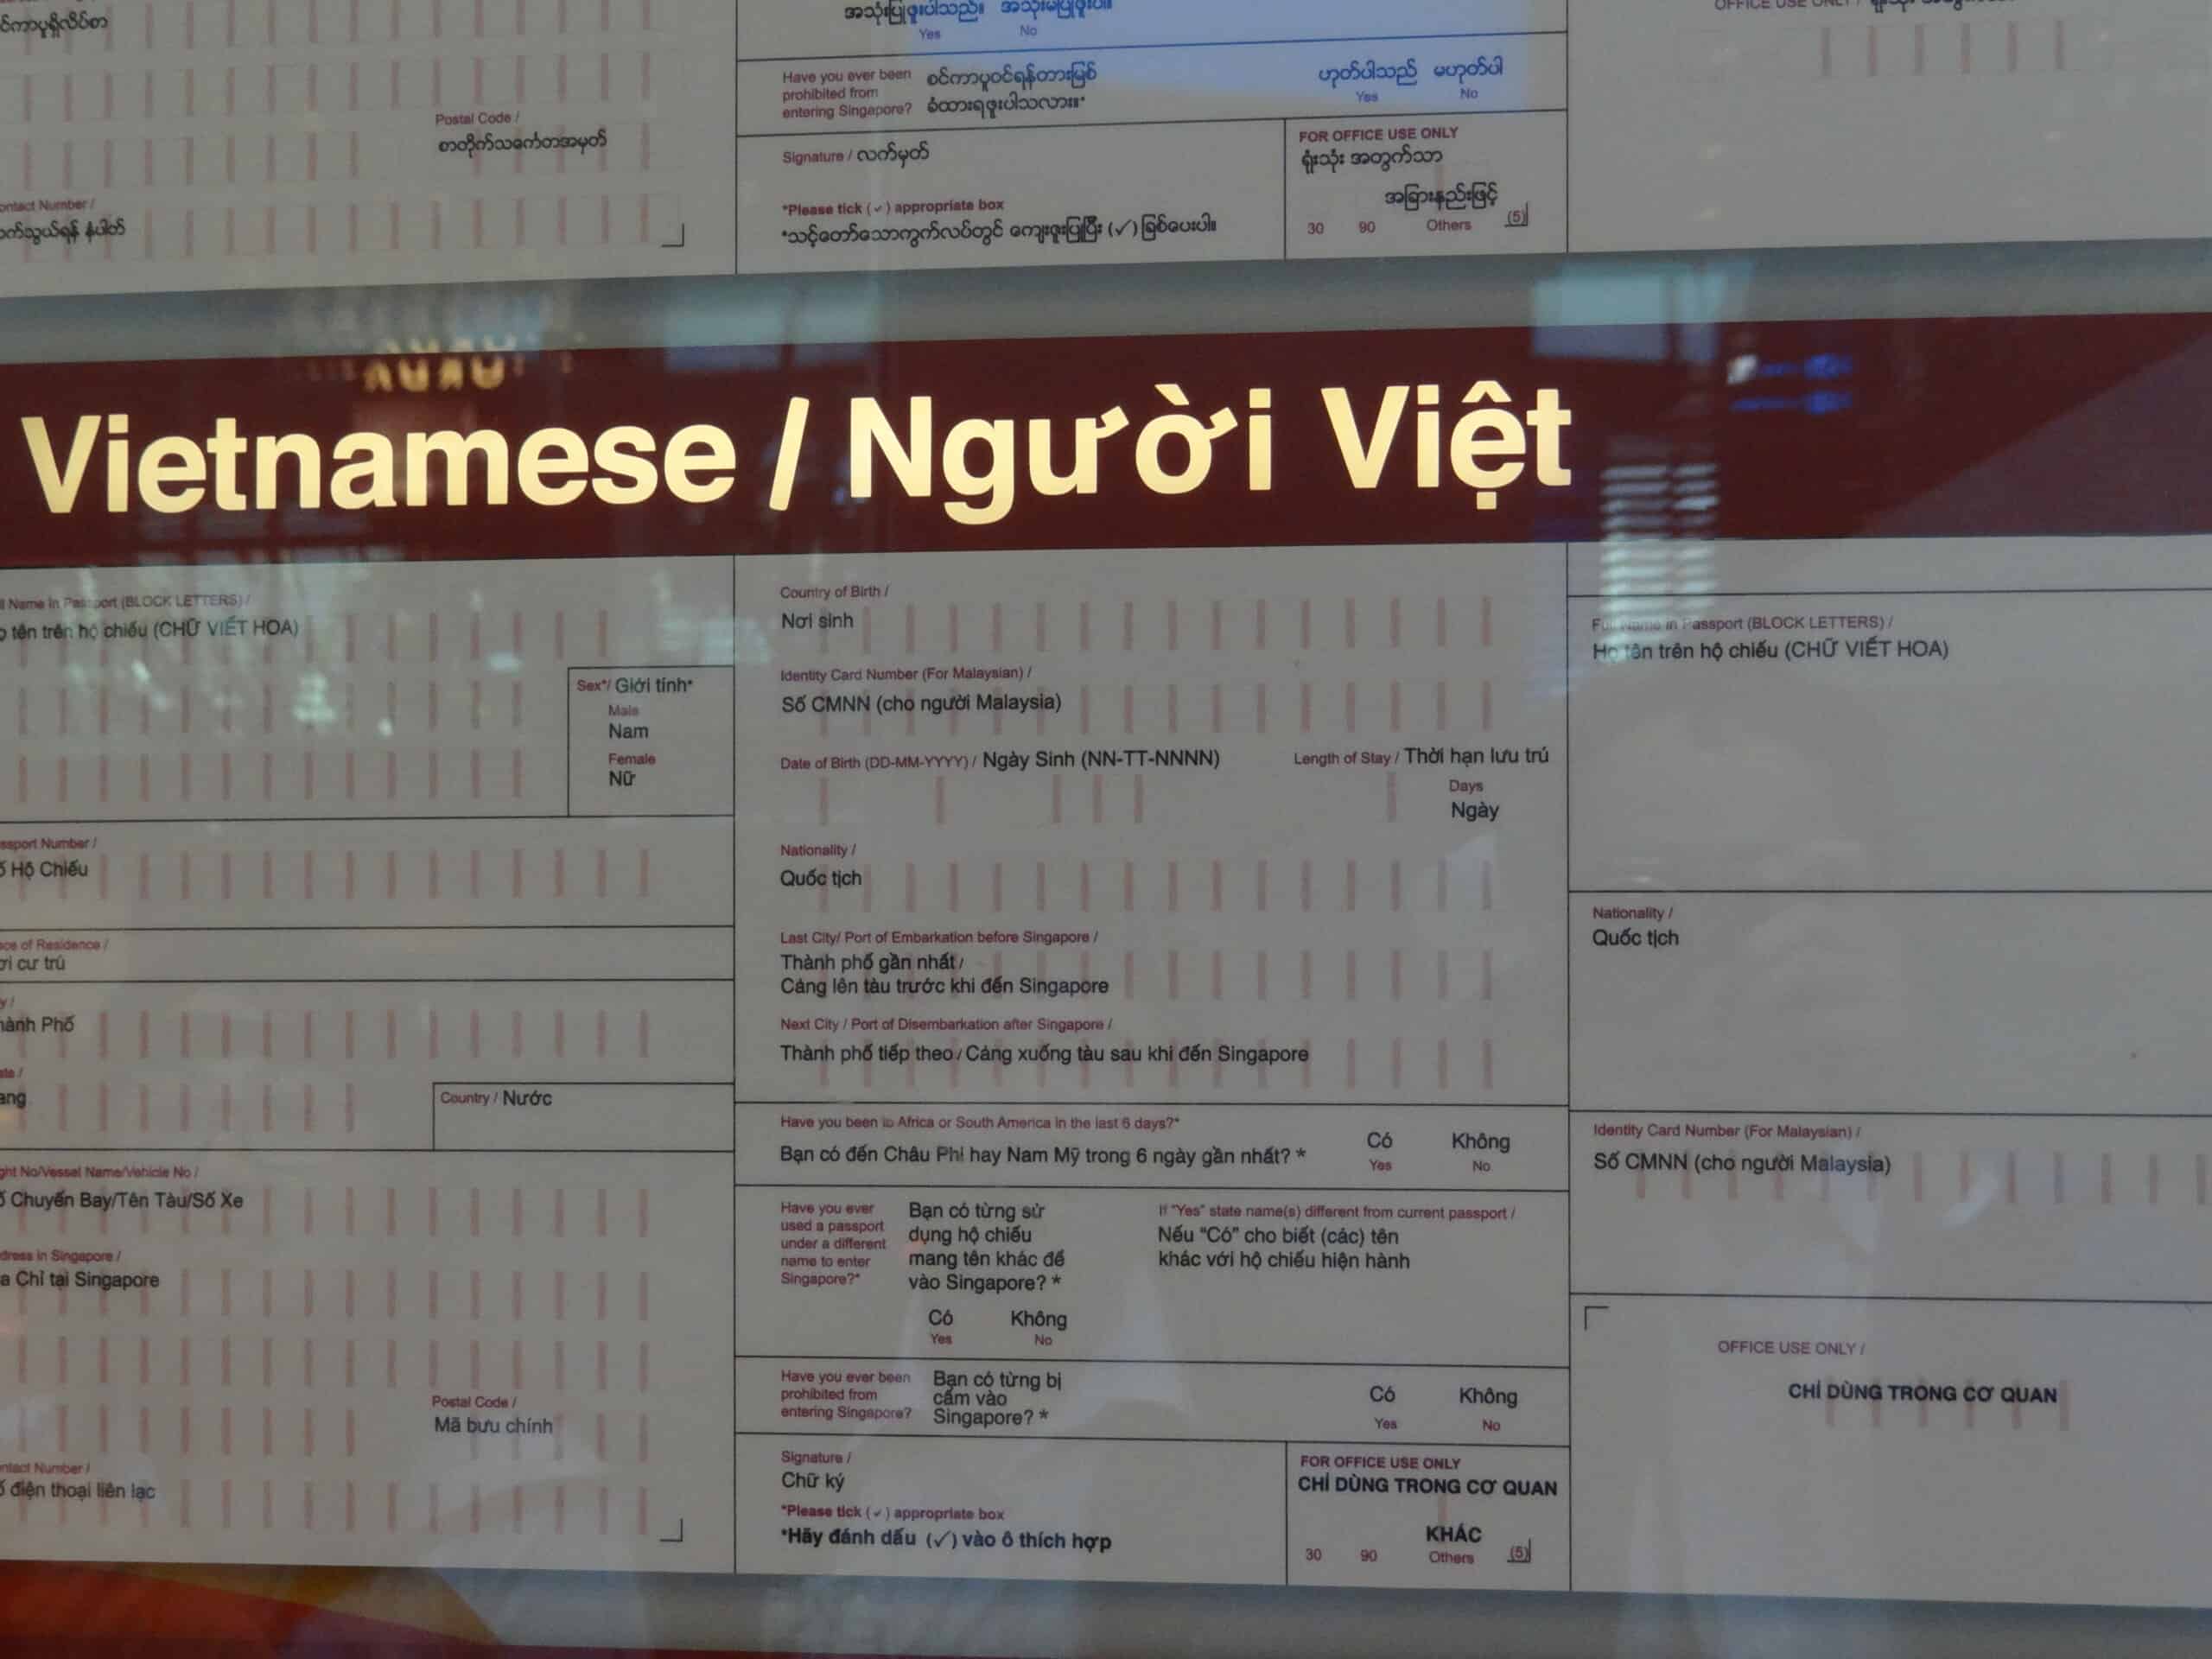 15 - Hướng dẫn điền tờ khai nhập cảnh Singapore cho người Việt Nam